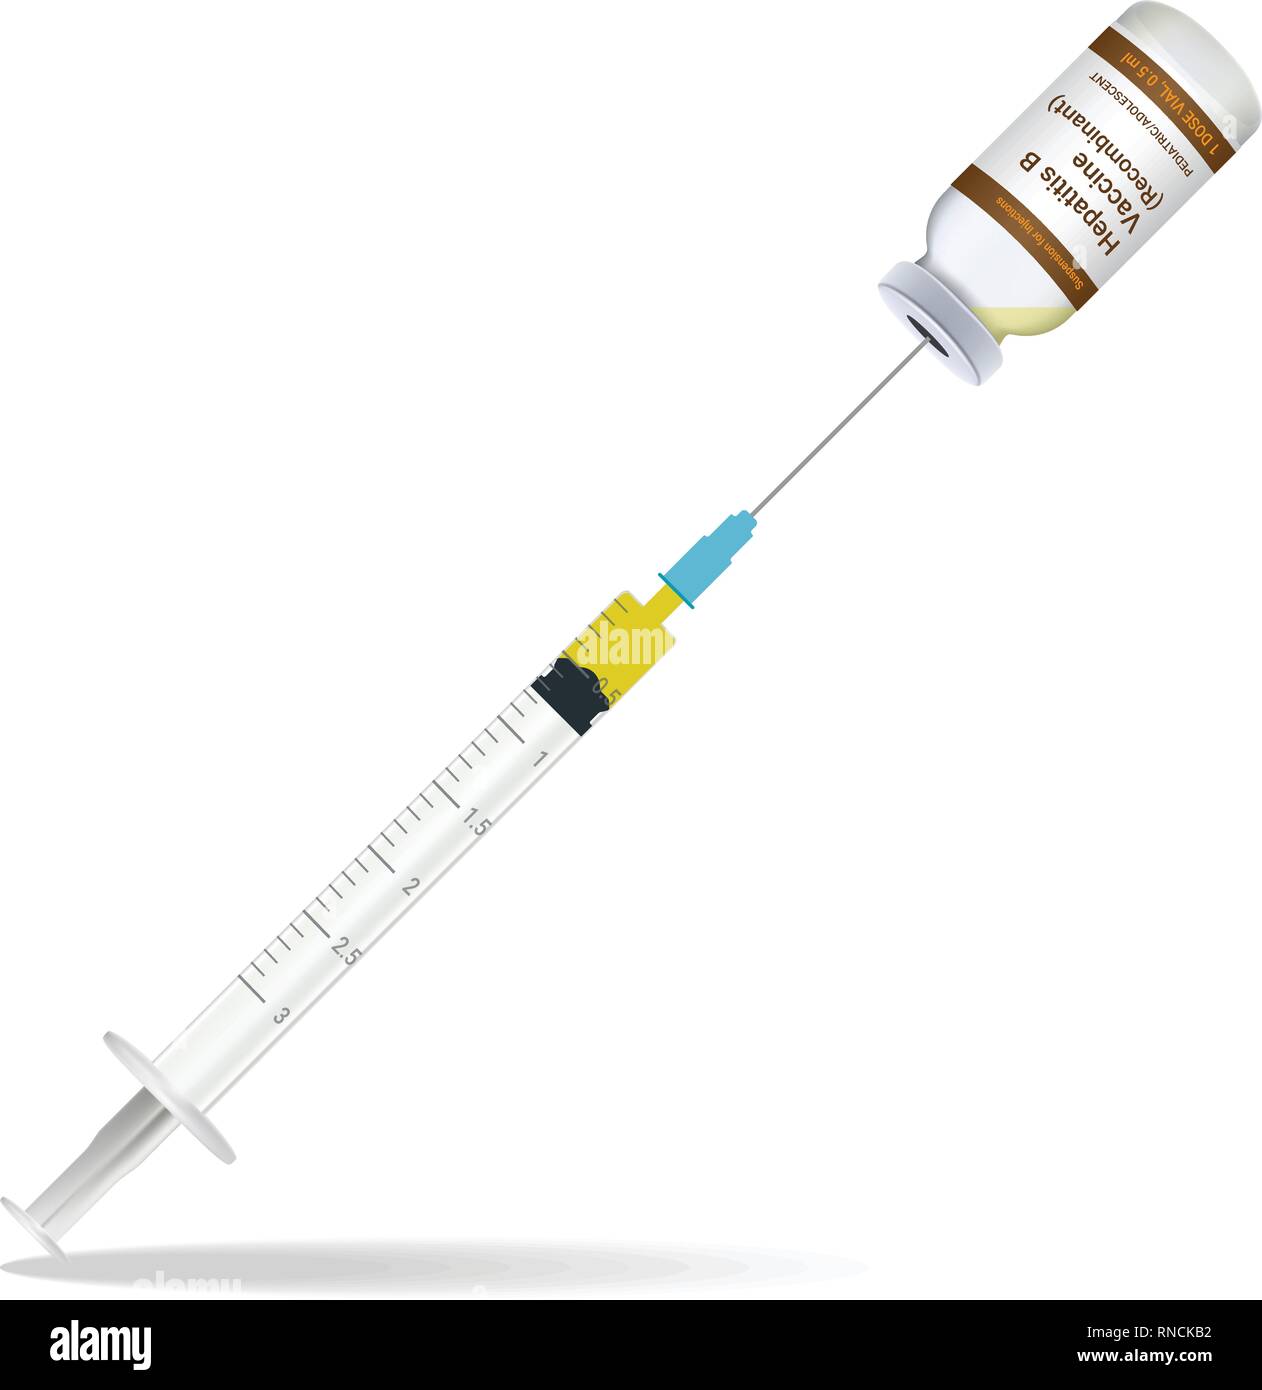 Immunisierung, Hepatitis Impfung Spritze enthalten einige Einspritz- und Einspritzanlage Flasche isoliert auf einem weißen Hintergrund. Vector Illustration. Stock Vektor